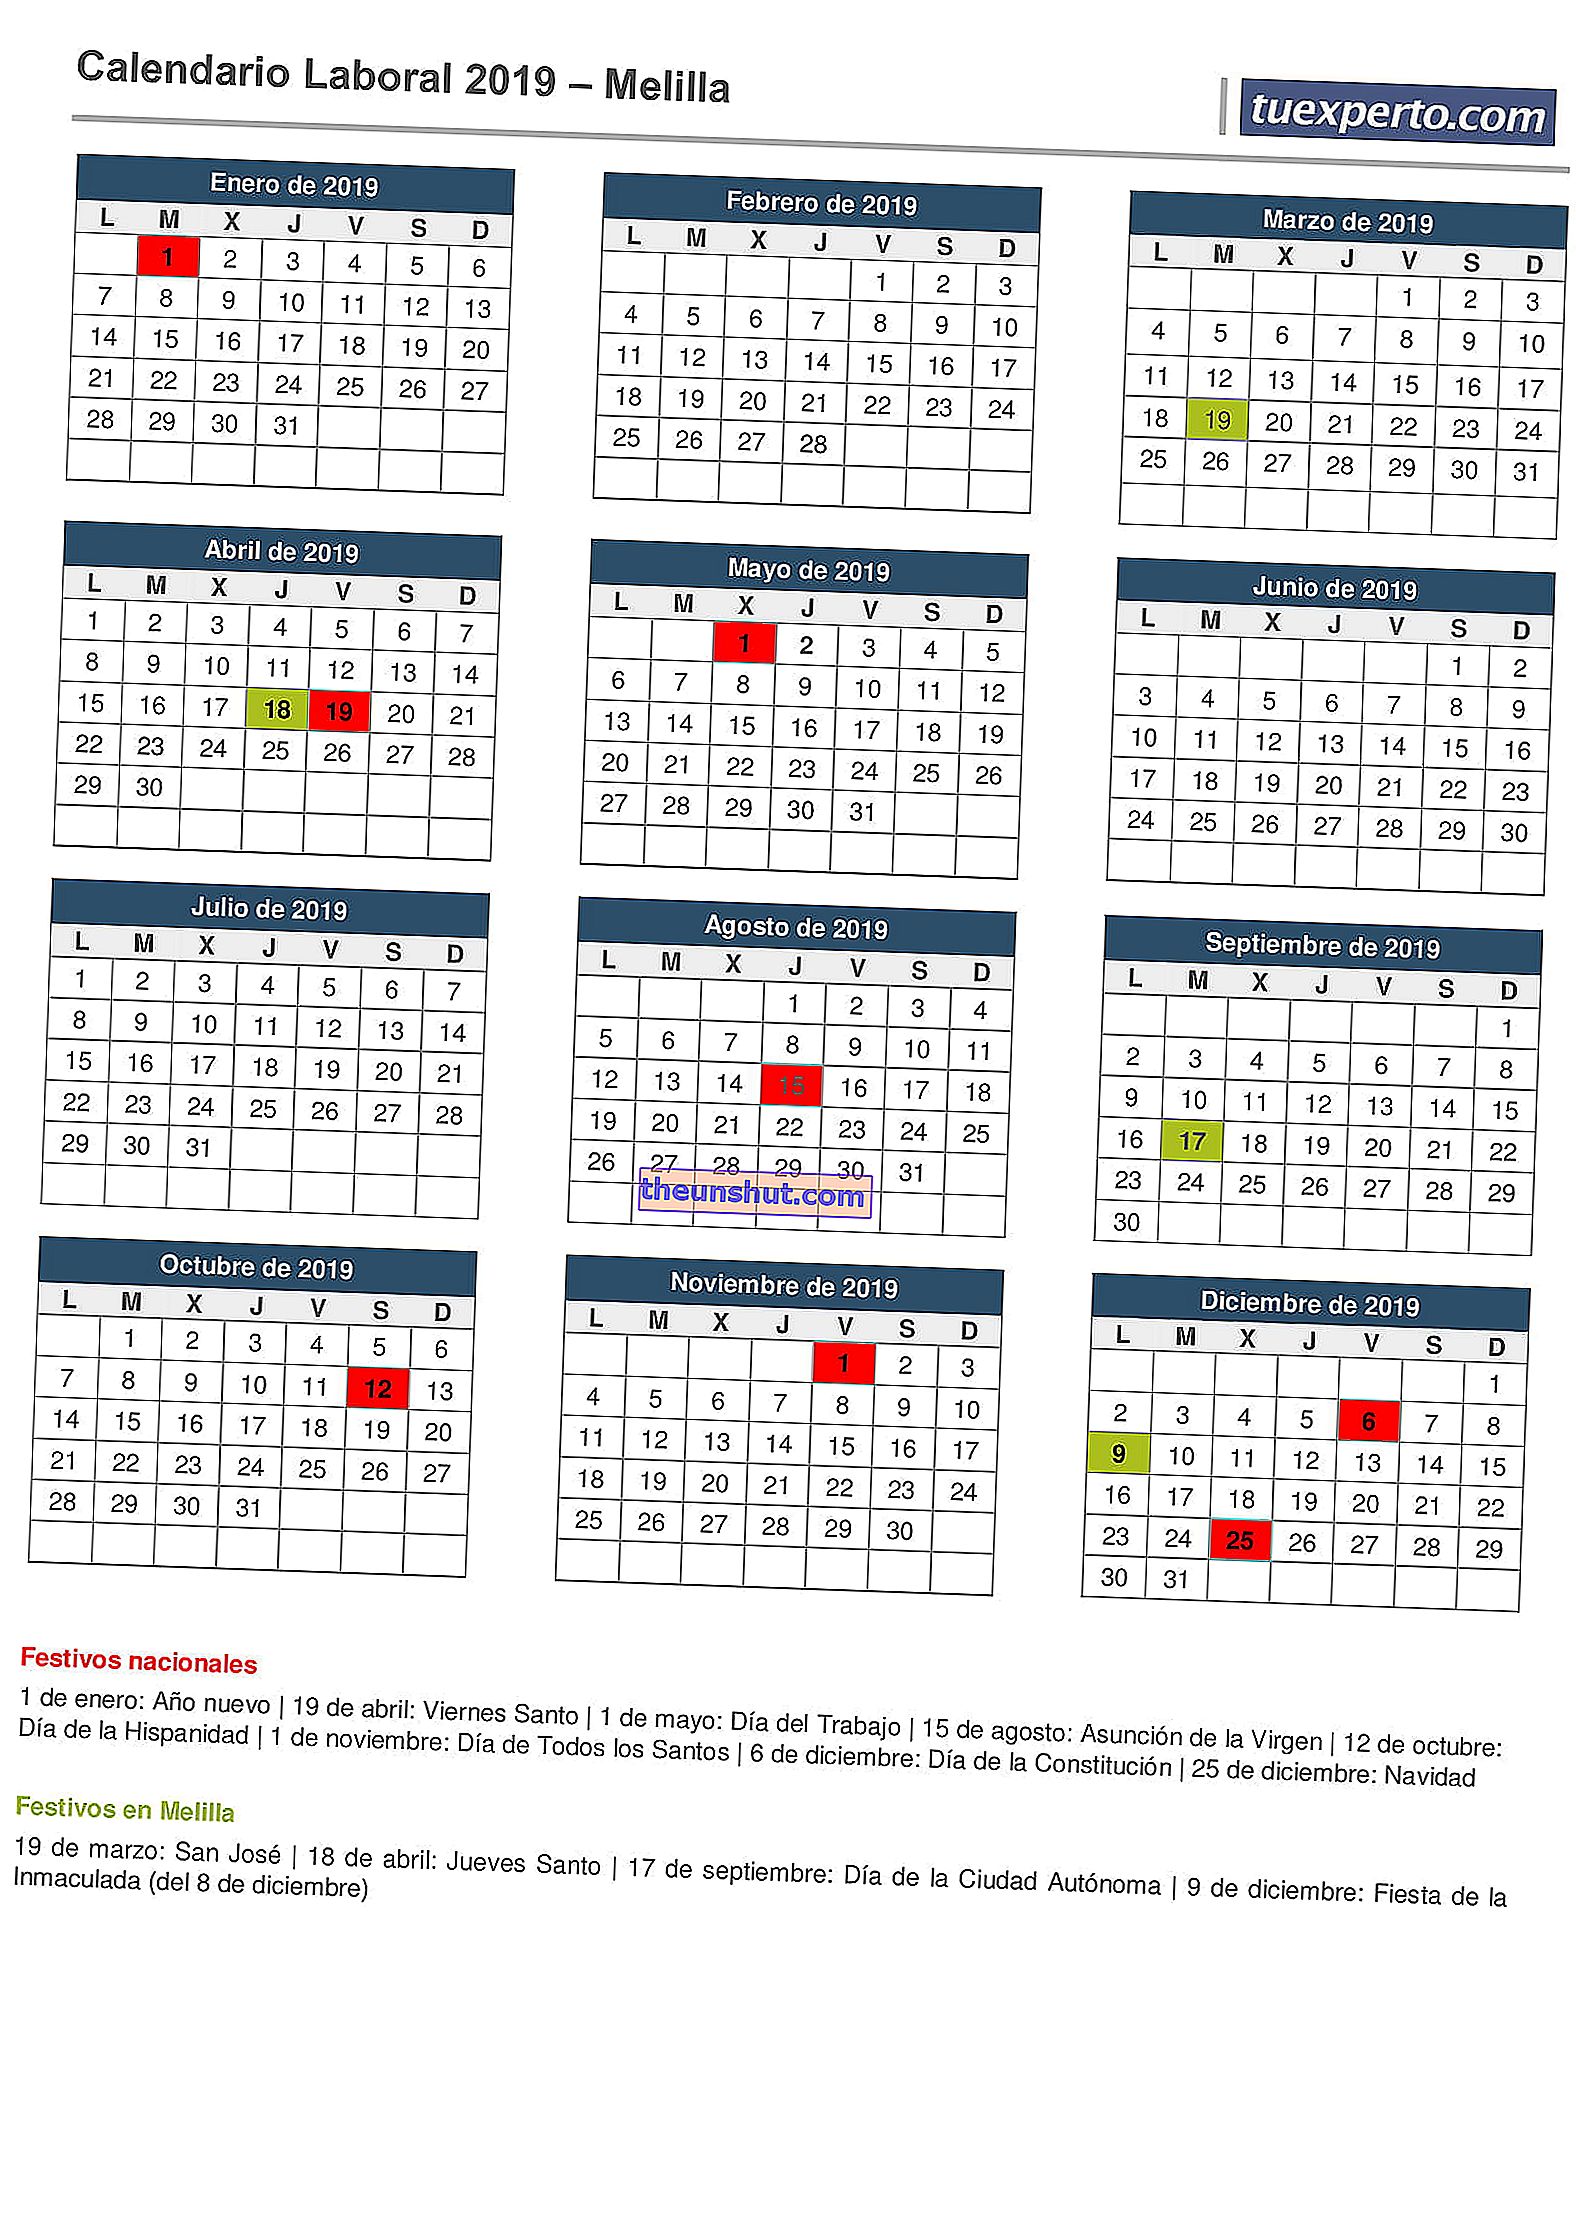 calendario aziendale melilla 2019